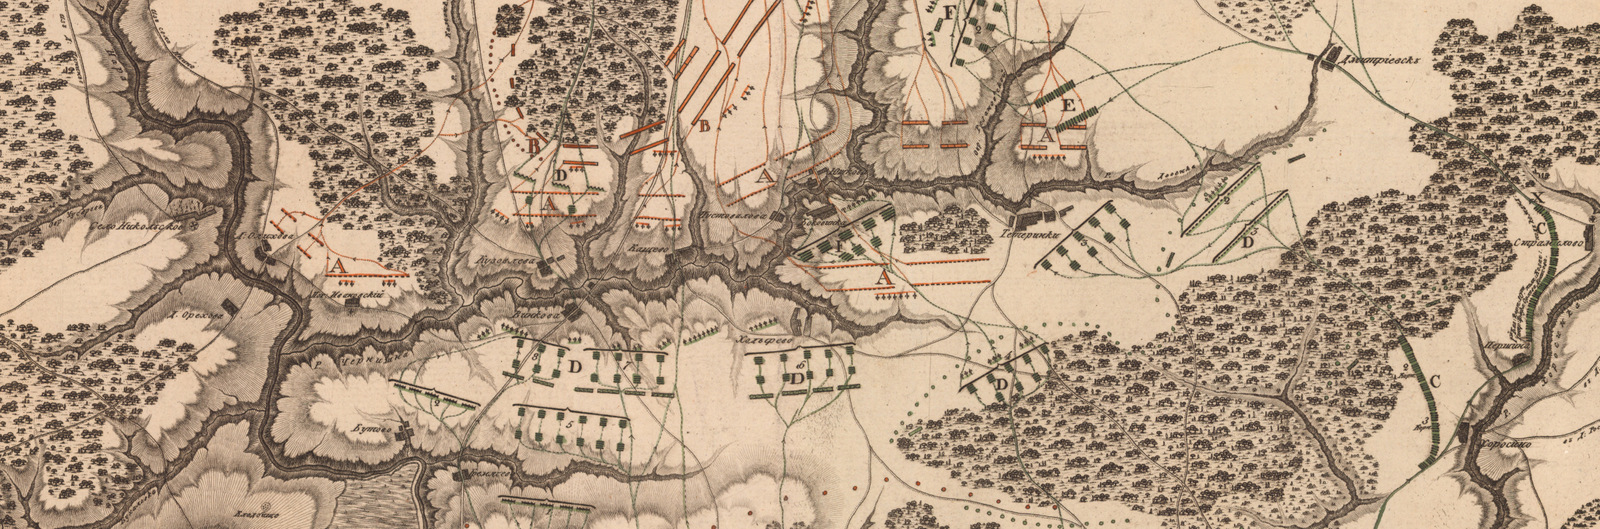 Фоновое изображение План сражения при речке Чернишне между войсками российскими и французскими в 1812 году октября 6-го дня